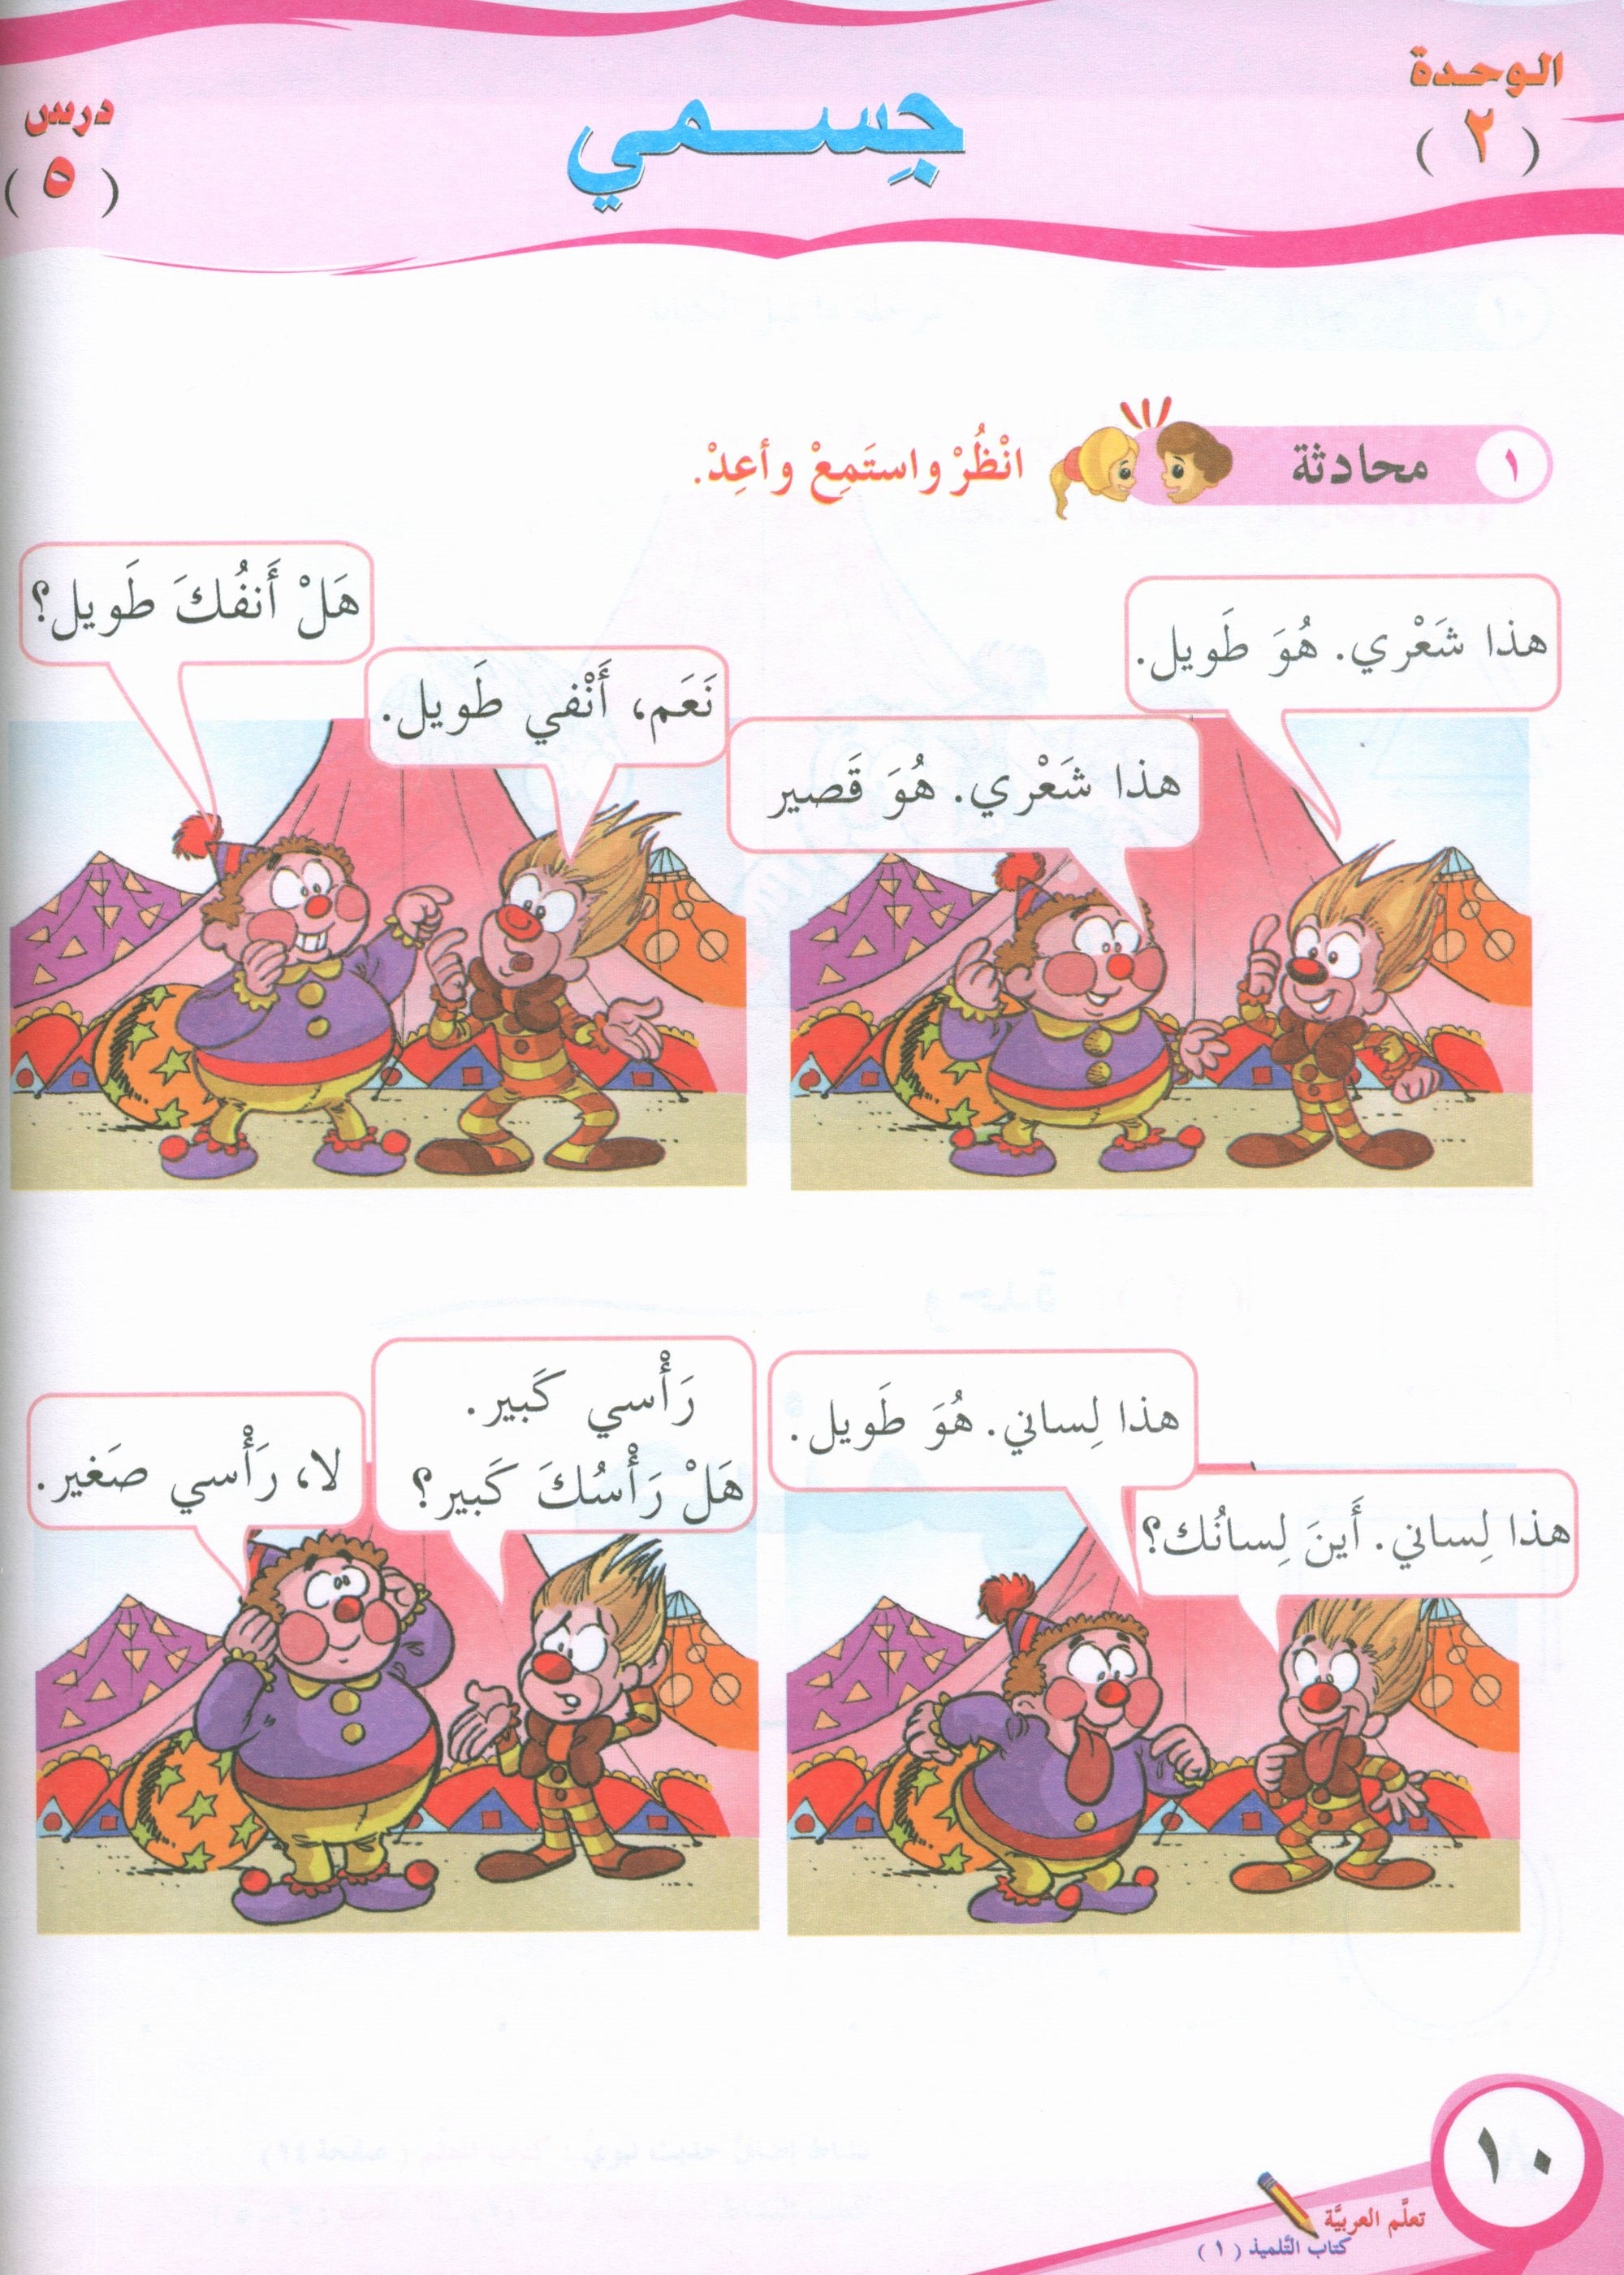 ICO Learn Arabic Textbook Level 1 Part 1 تعلم العربية كتاب التلميذ